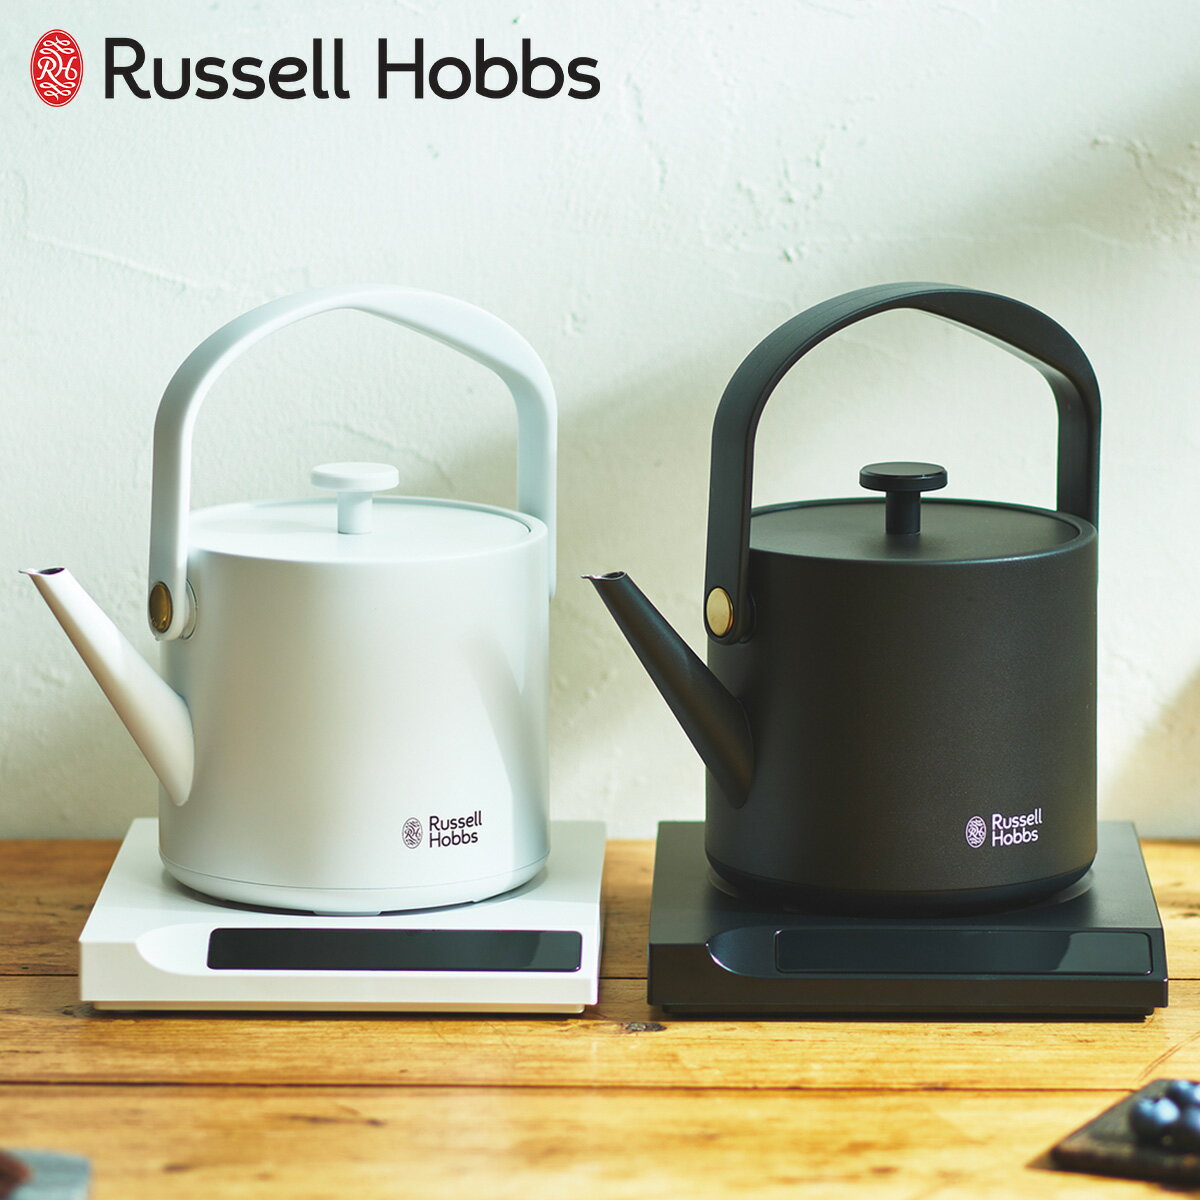 Russell Hobbs ラッセルホブス 電気ケトル Tケトル 温度調整電気ケトル 湯沸かし器 0.6L 保温 コーヒー 軽量 一人暮らし キッチン 家電 7106JP